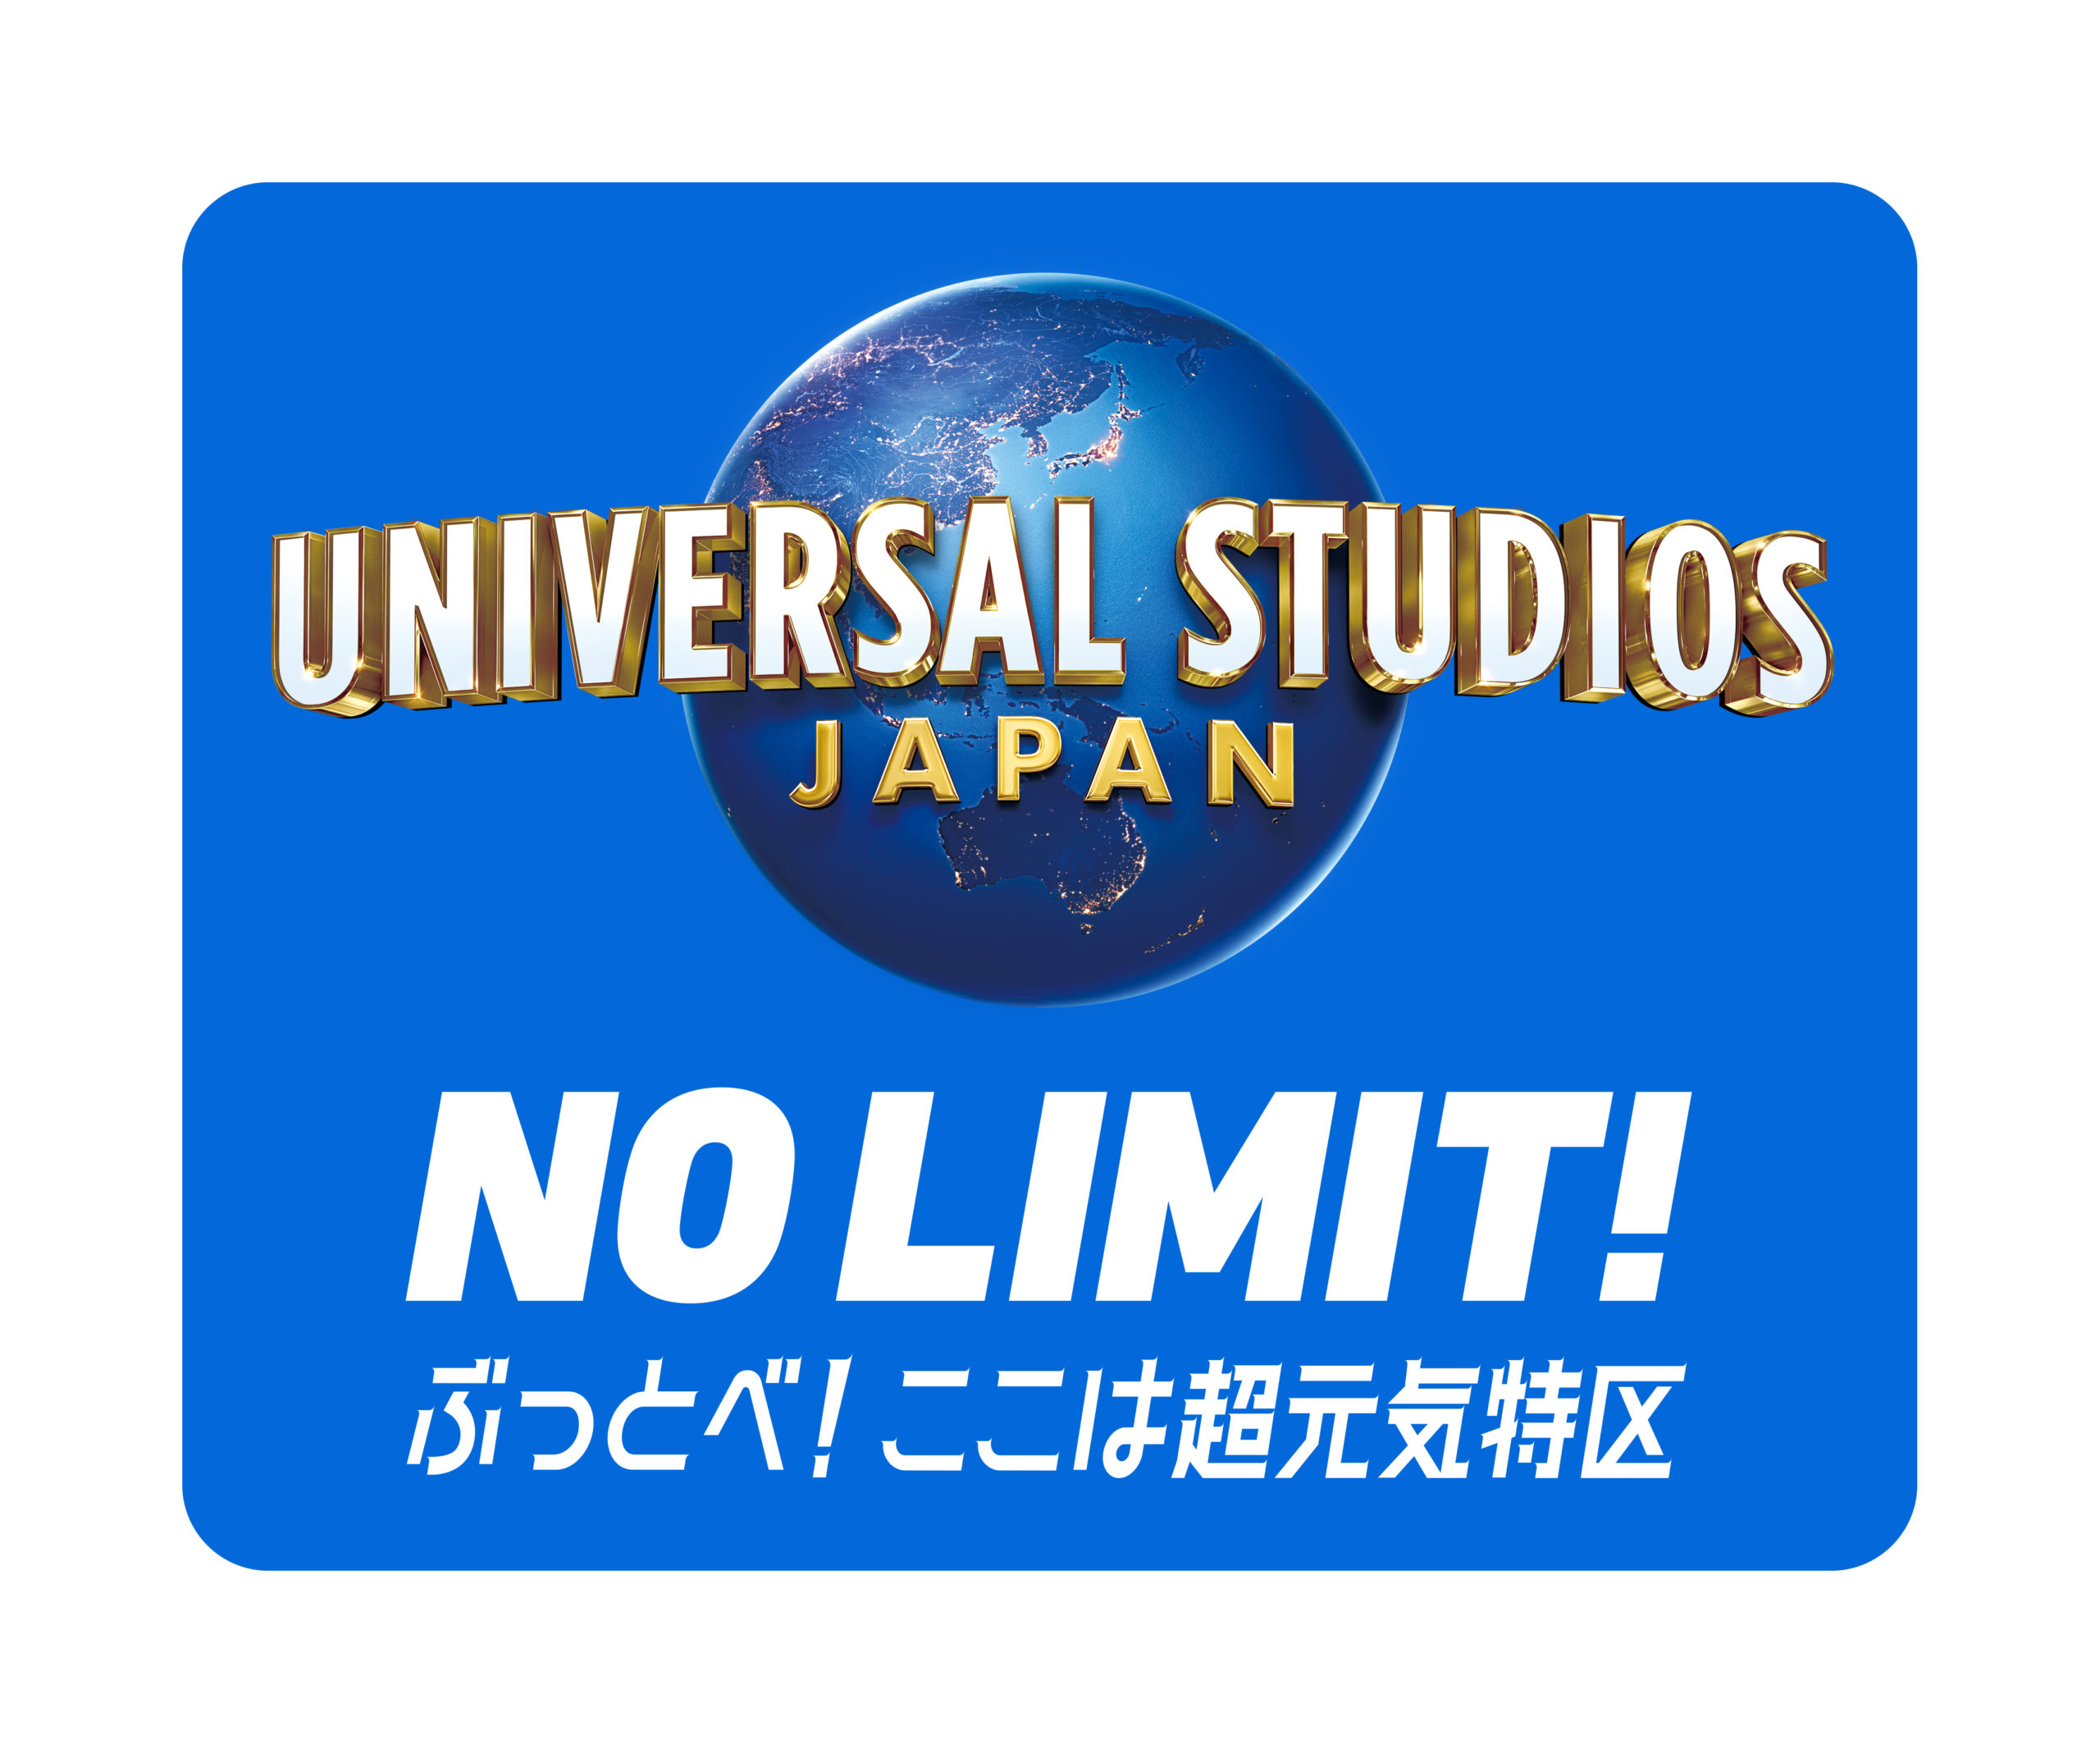 ユニバーサル・スタジオ・ジャパン